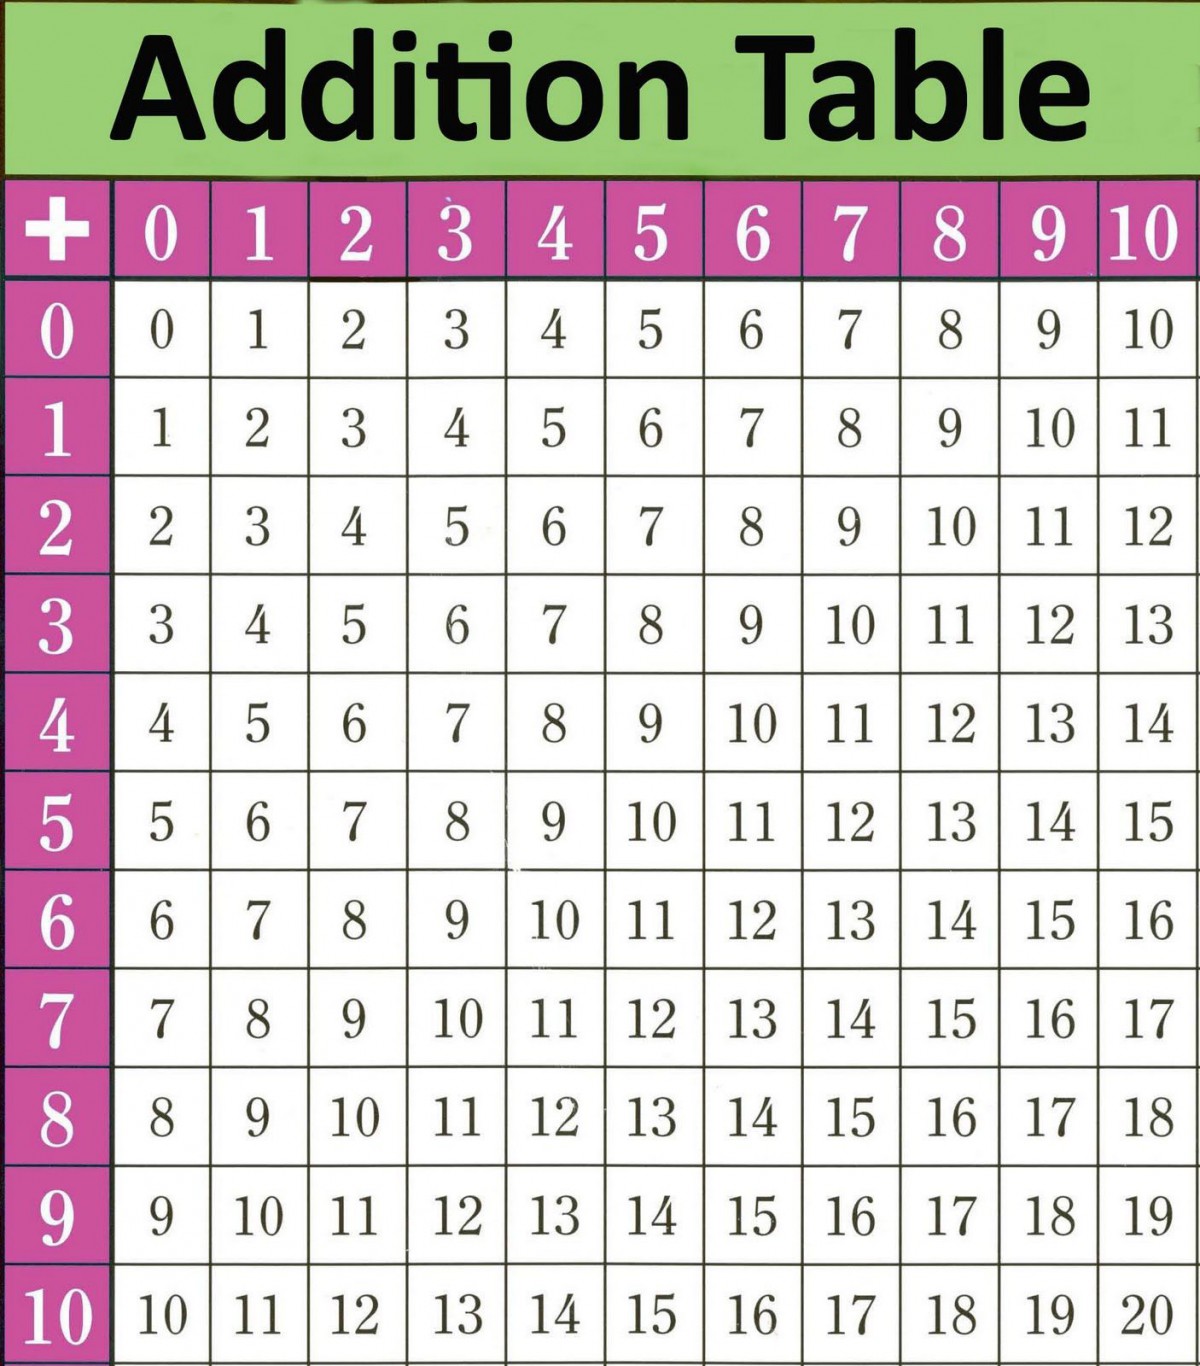 addition-table-patterns-worksheets-worksheet-hero